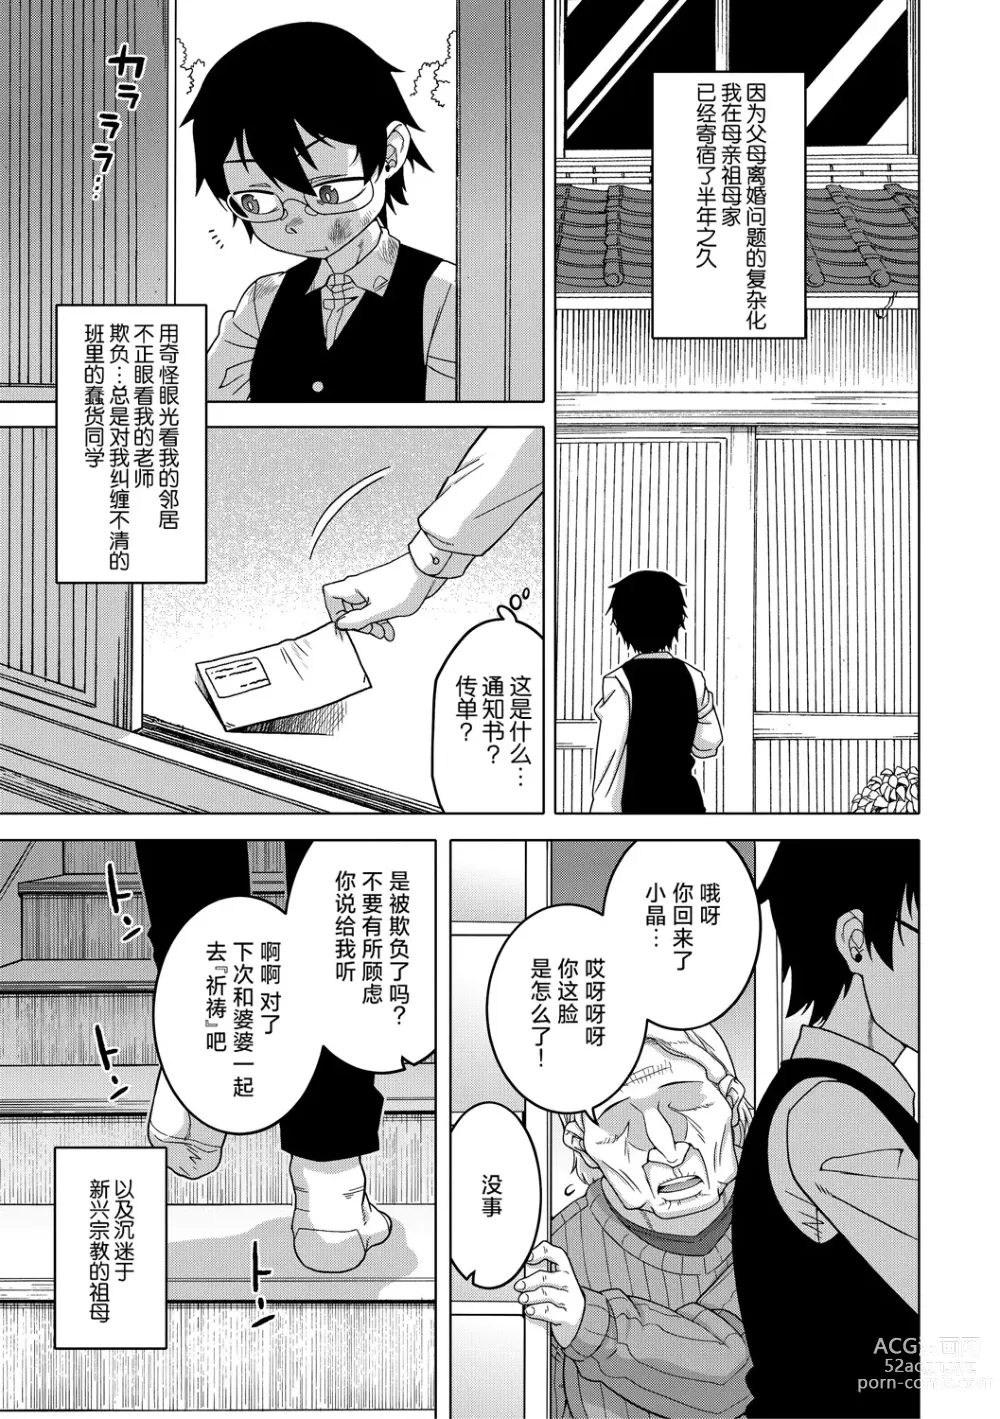 Page 6 of manga Kami-sama no Tsukurikata